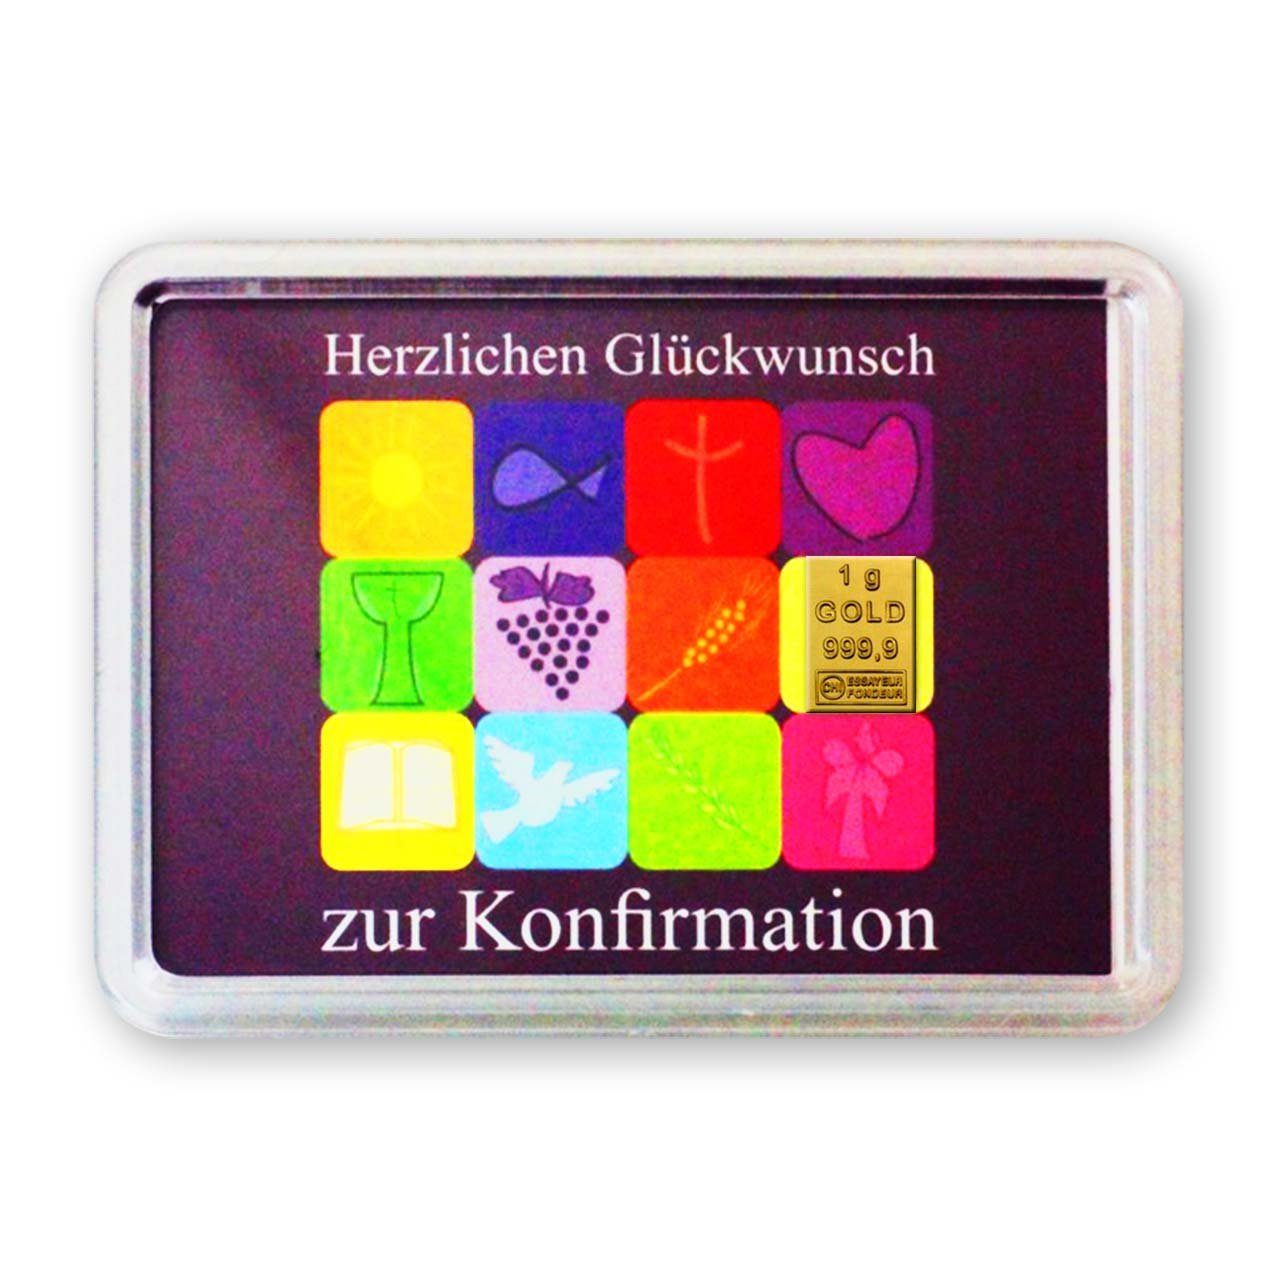 Goldschulz Grußkarten 1 Gramm Gold Grußkarte Motivbox Konfirmation / Zur